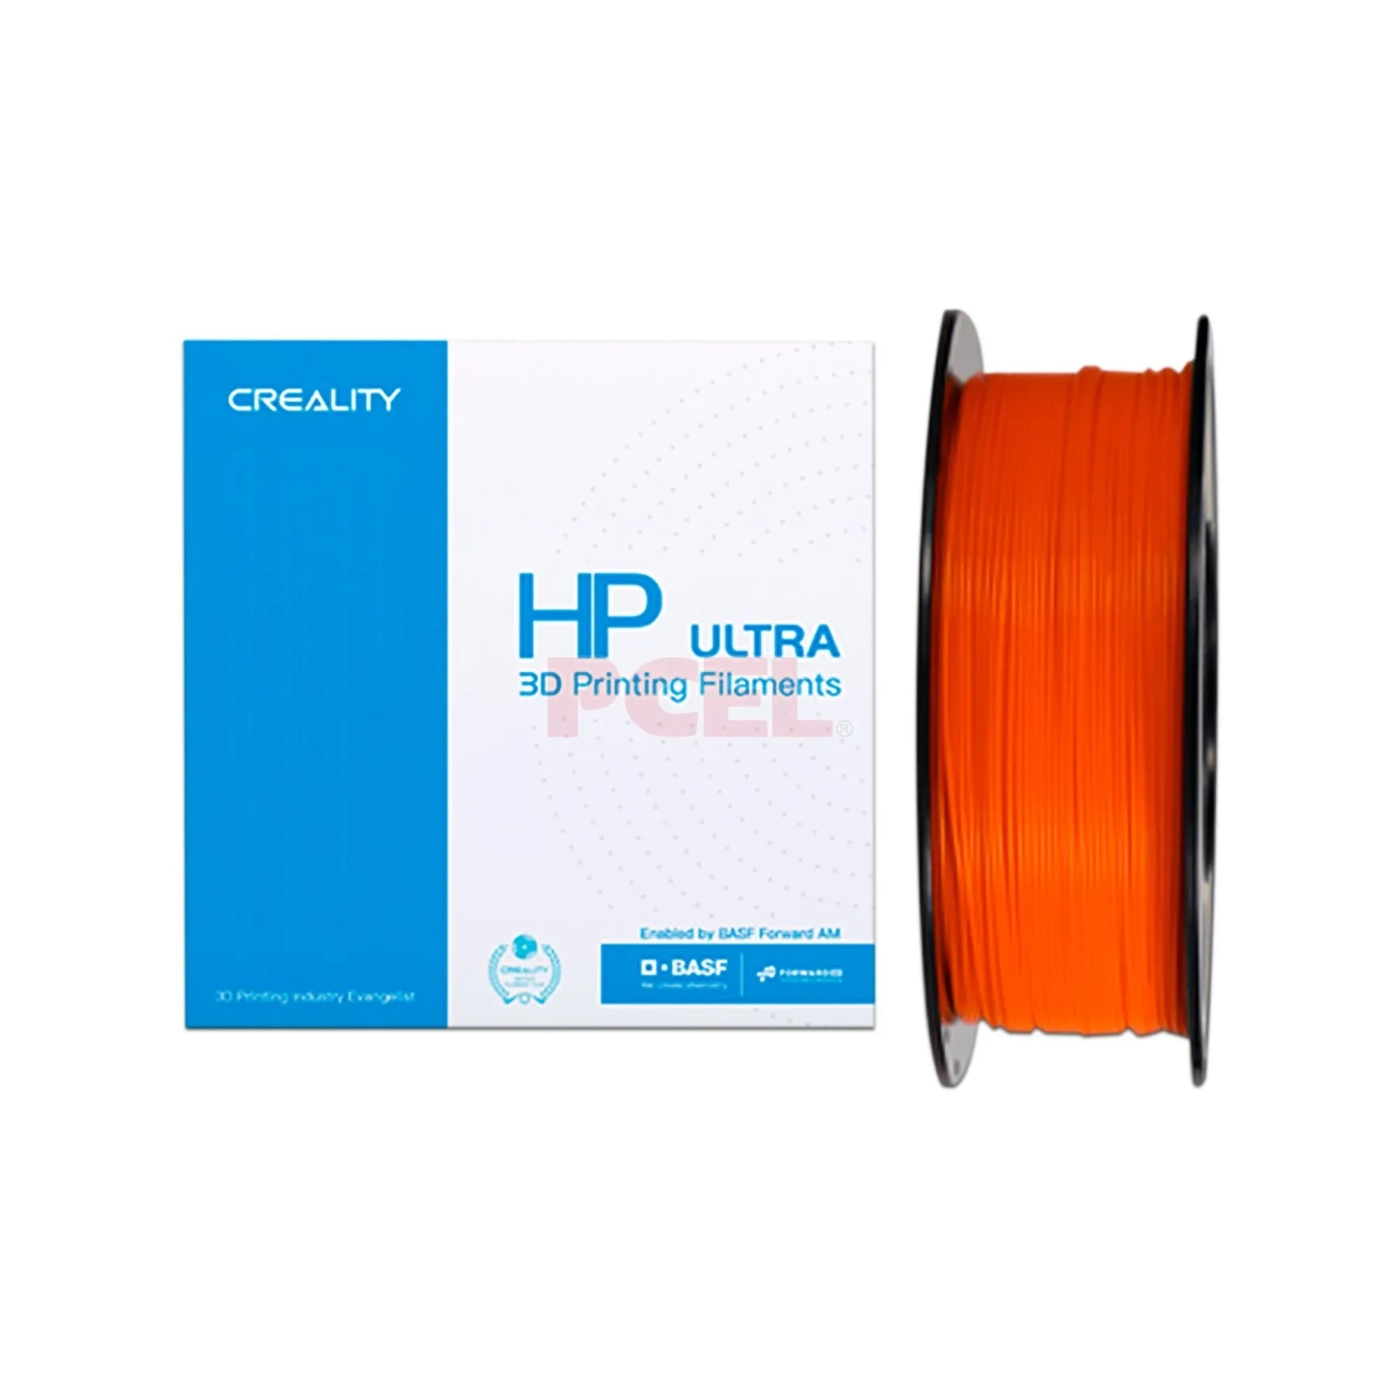 Купить HP ULTRA PLA Filament (пластик) для 3D принтера CREALITY 1кг, 1.75мм, оранжевый - фото 1